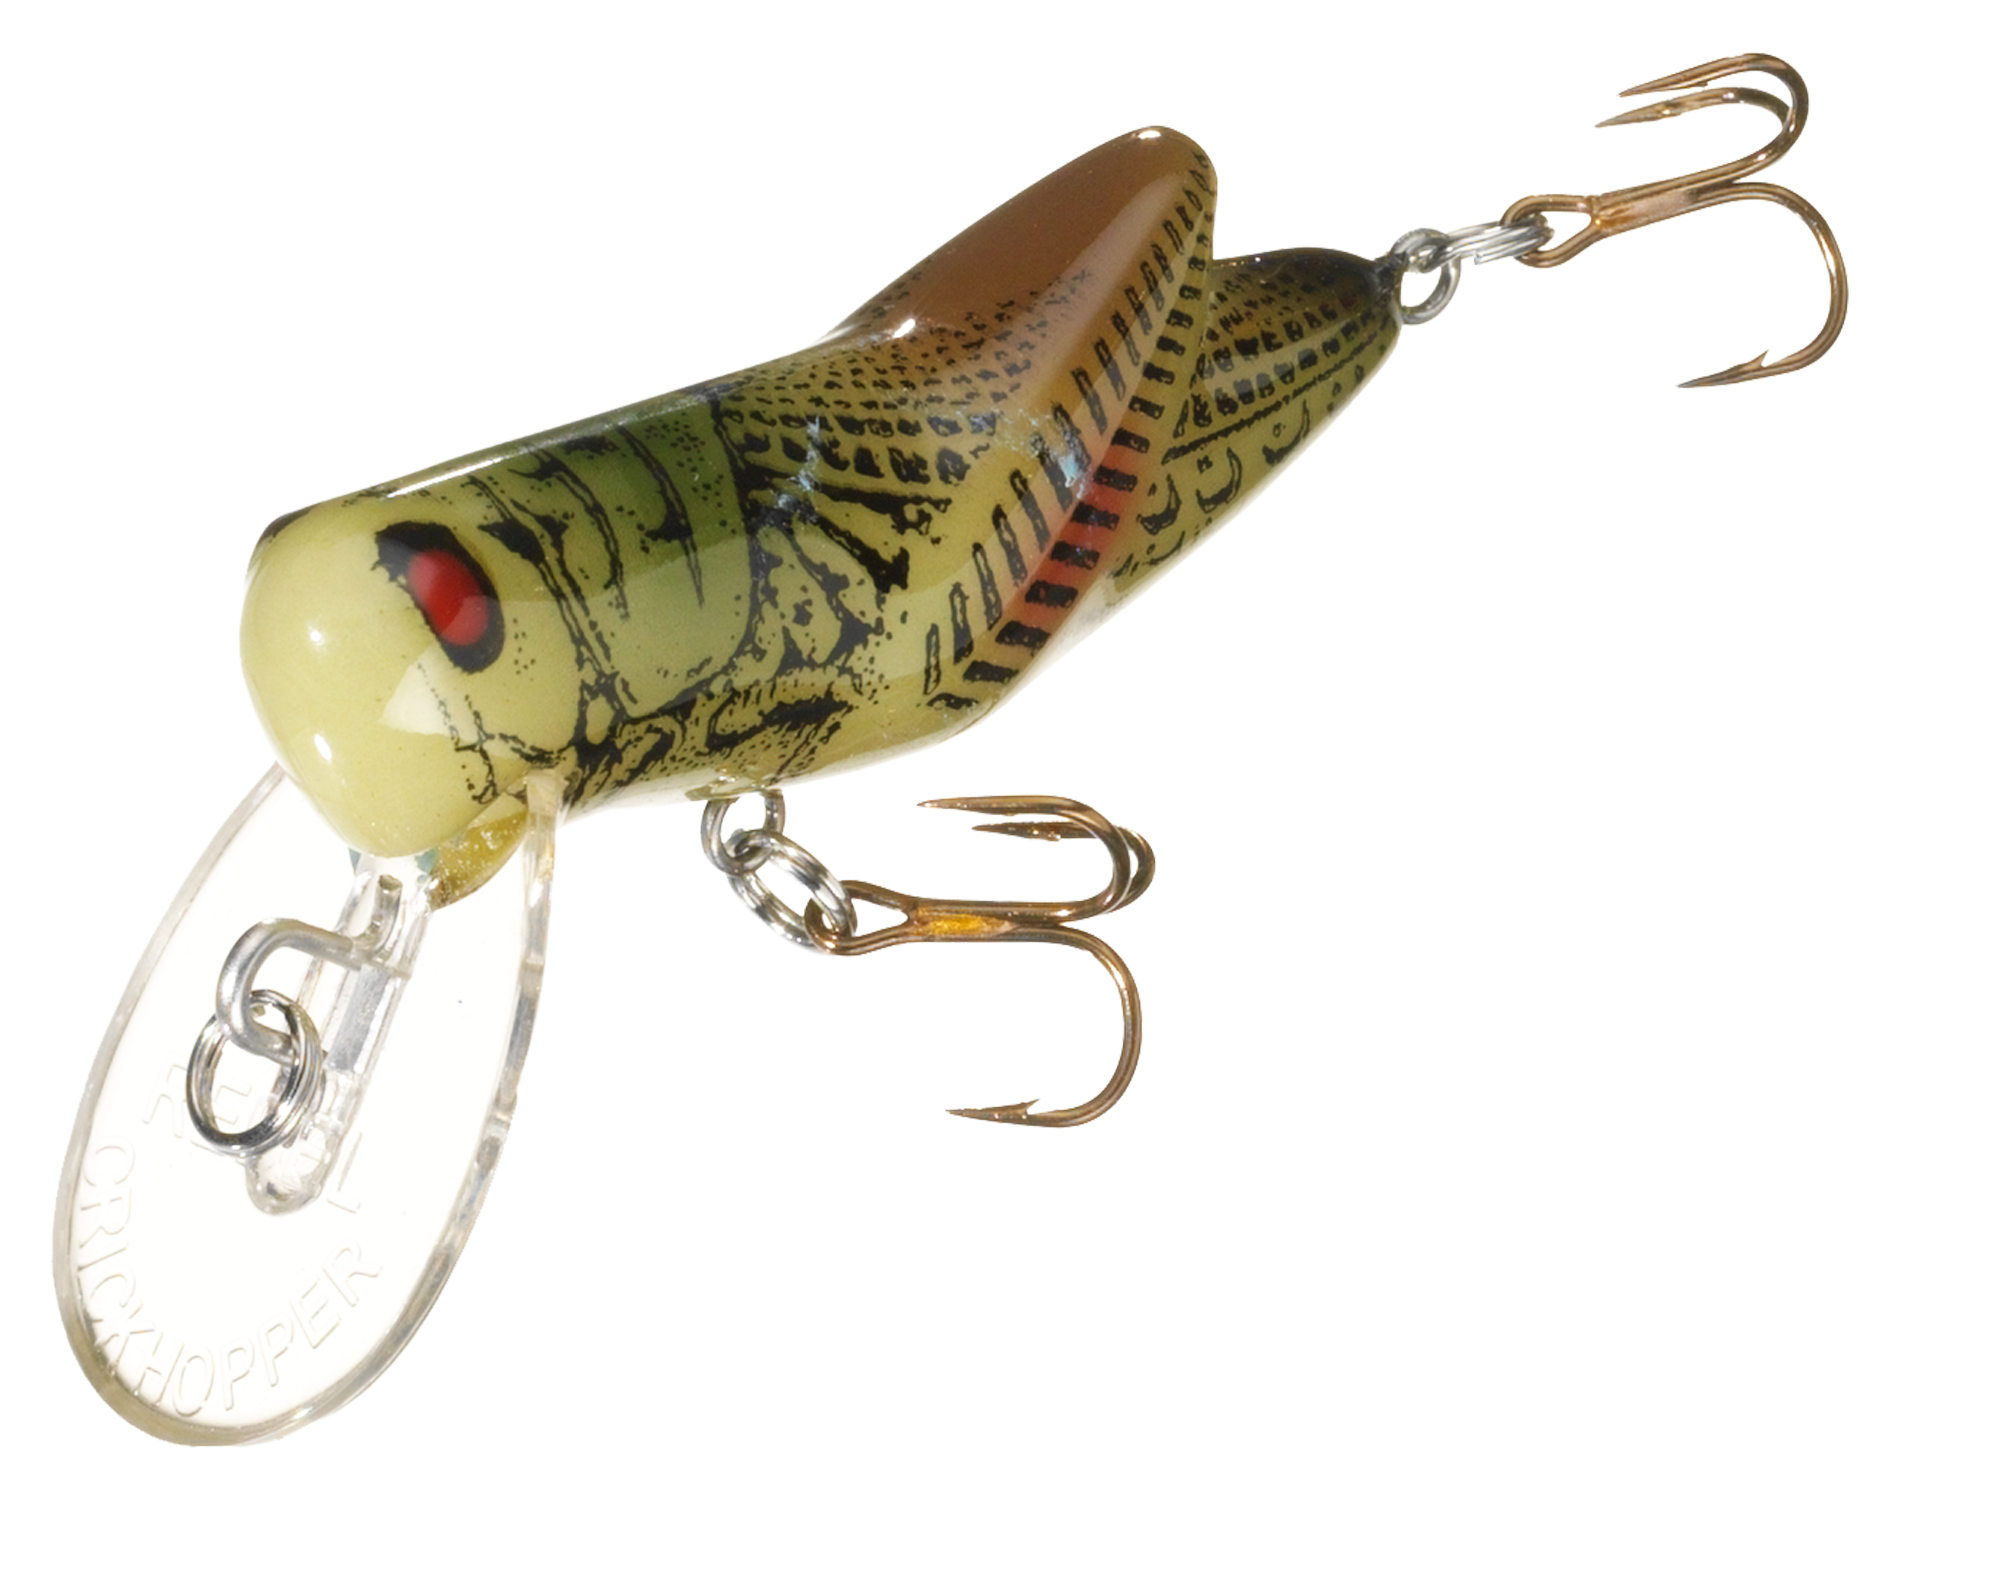 Rebel Crickhopper 3/32 oz Fishing Lure - Green Grasshopper